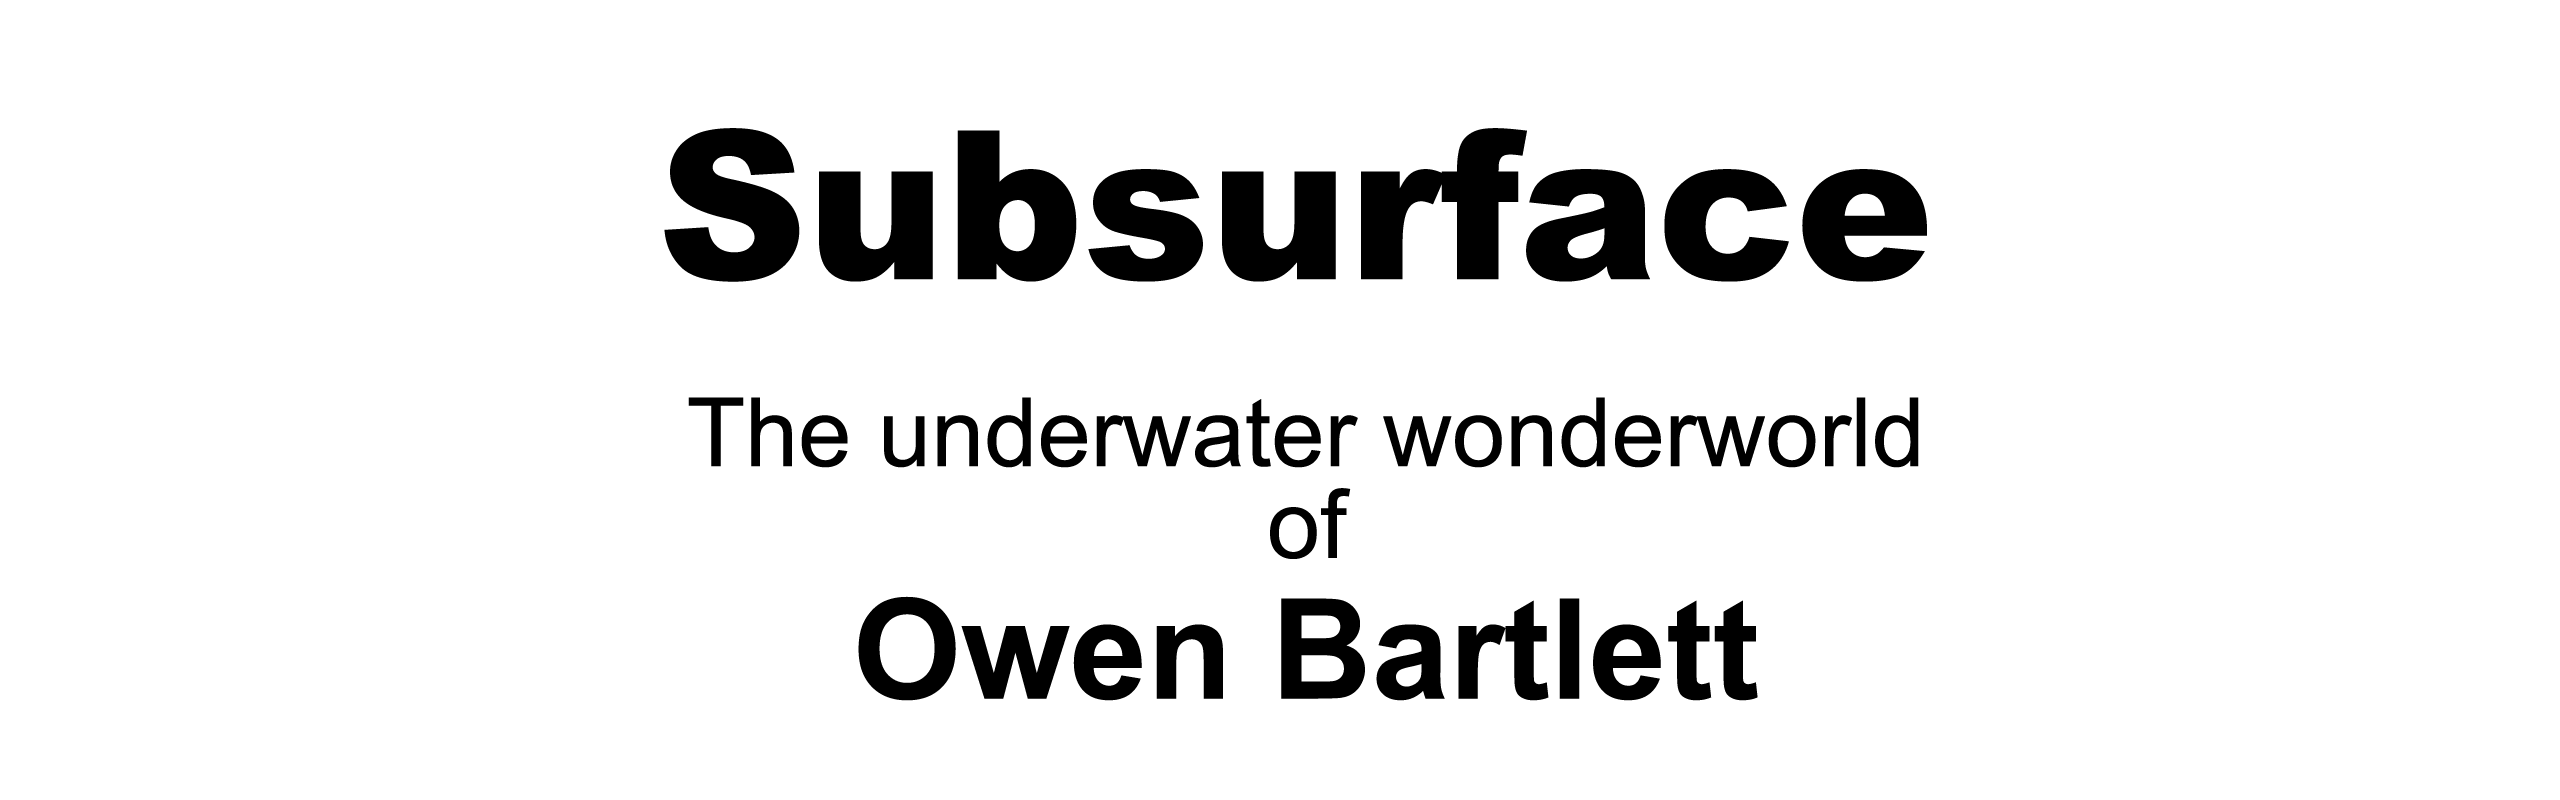 Owen Bartlett